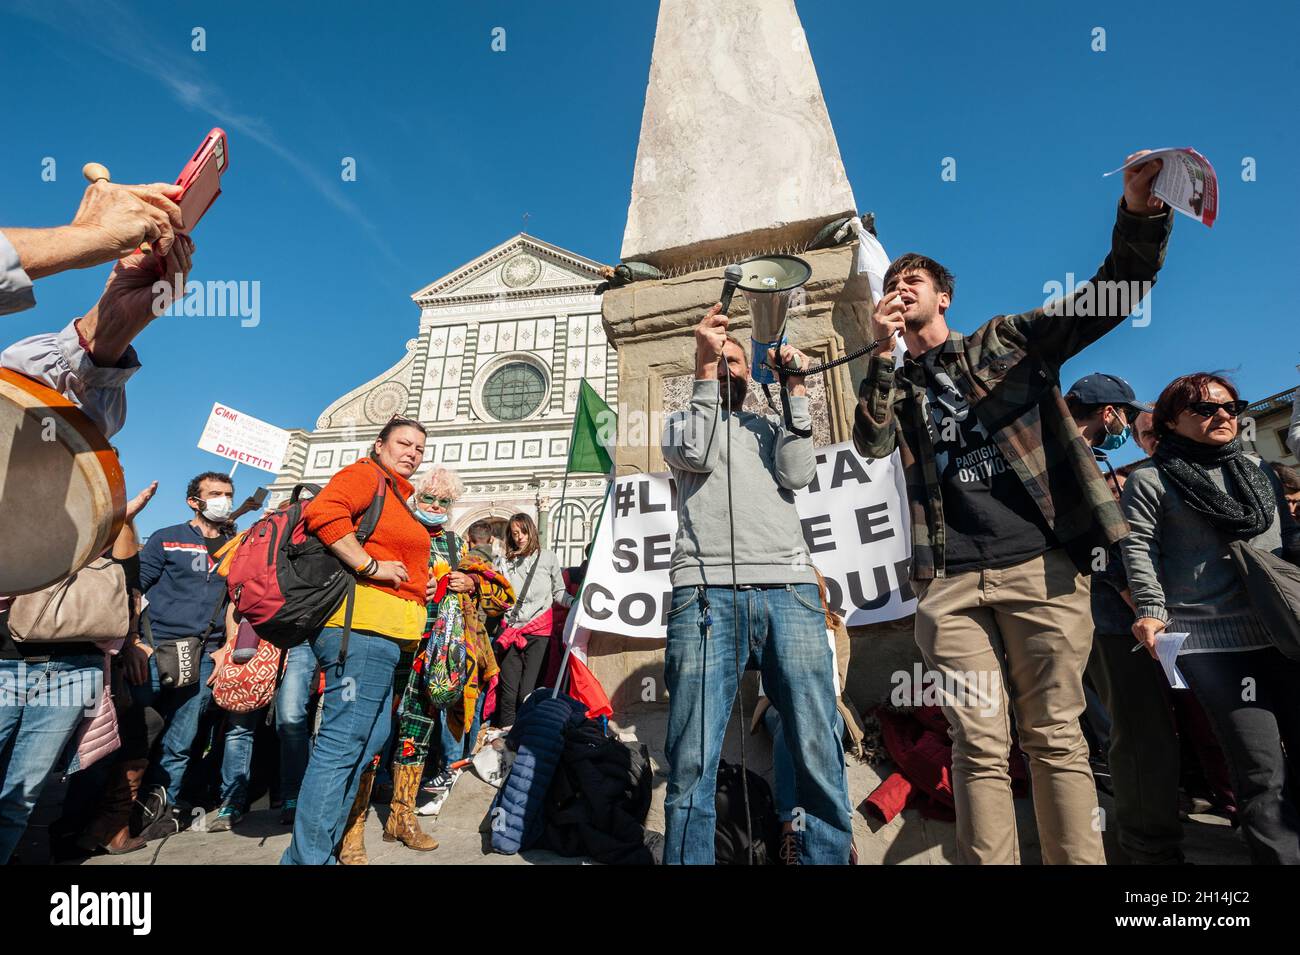 Firenze, Italia - Ottobre 15: Covid-19, proteste nazionali come l'Italia rende il Health Pass obbligatorio nel luogo di lavoro. No Green Pass Sit-in a S. Maria N. Foto Stock